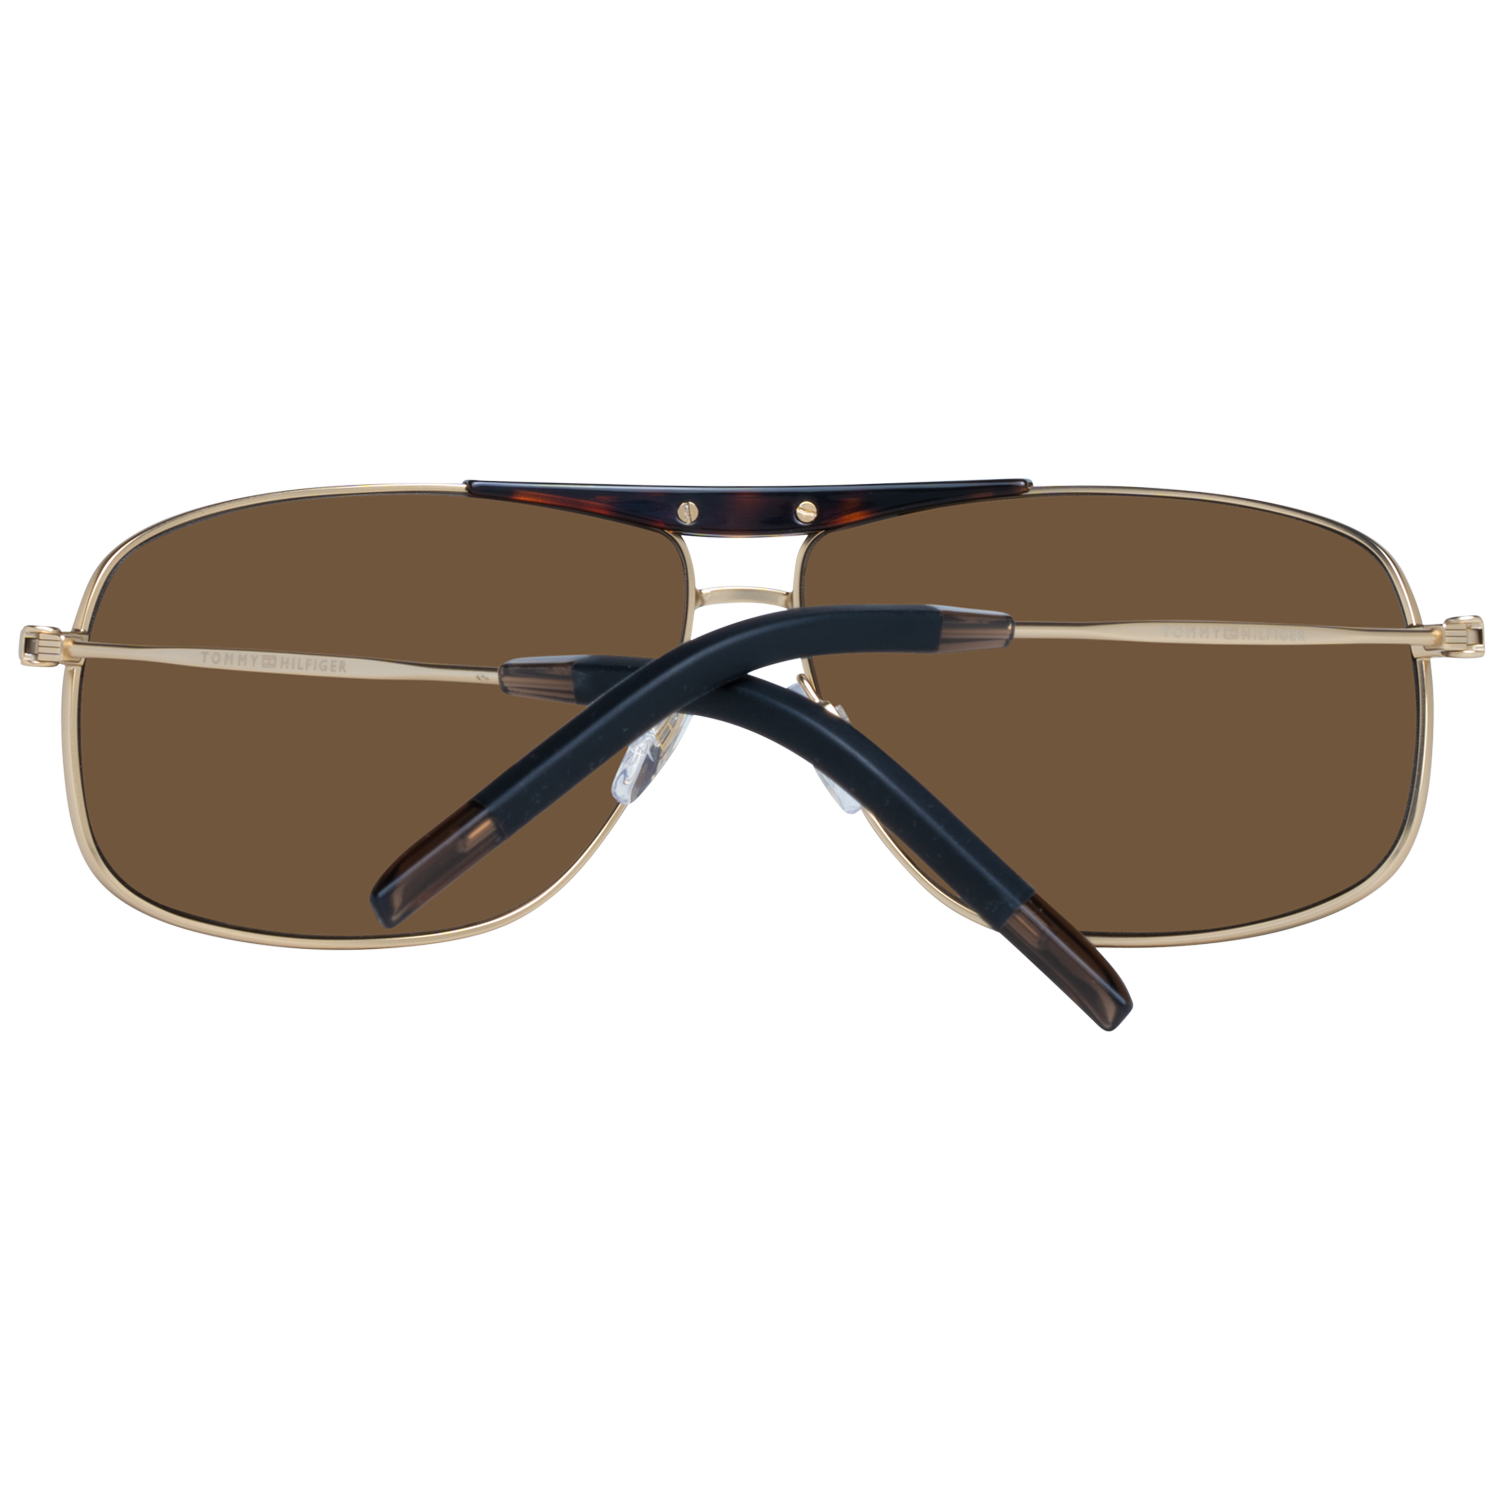 Ligegyldighed Fremme Styrke Tommy Hilfiger Sunglasses TH 1797/S SVK 67